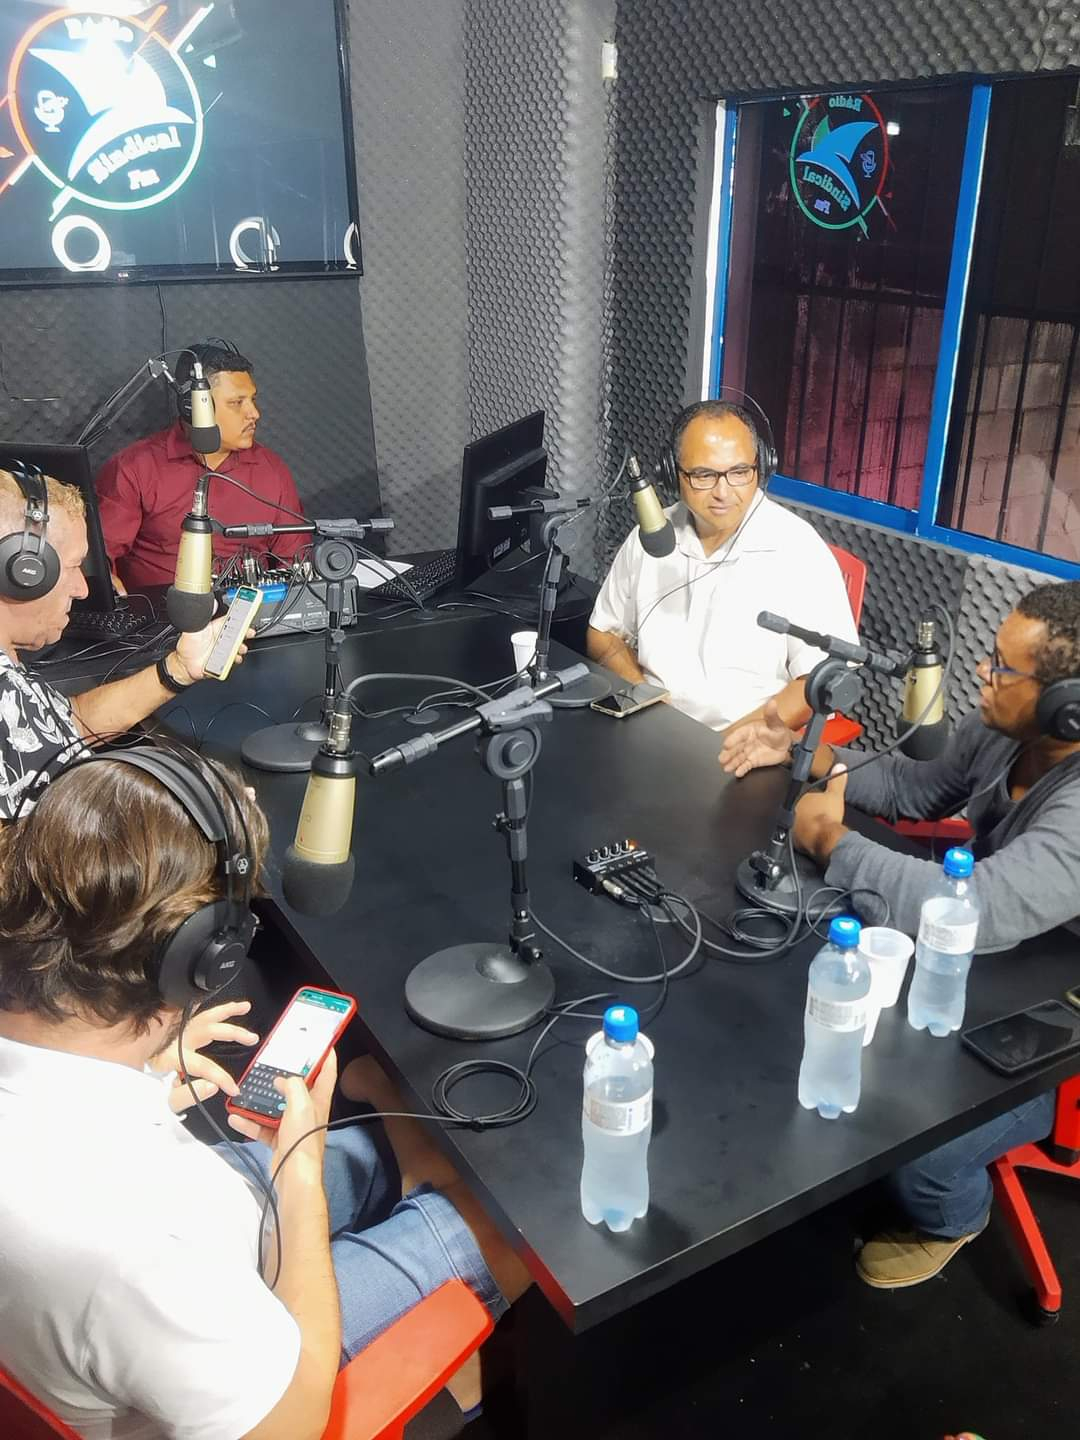 Frentistas de Campinas inauguram rádio e estúdio de podcast